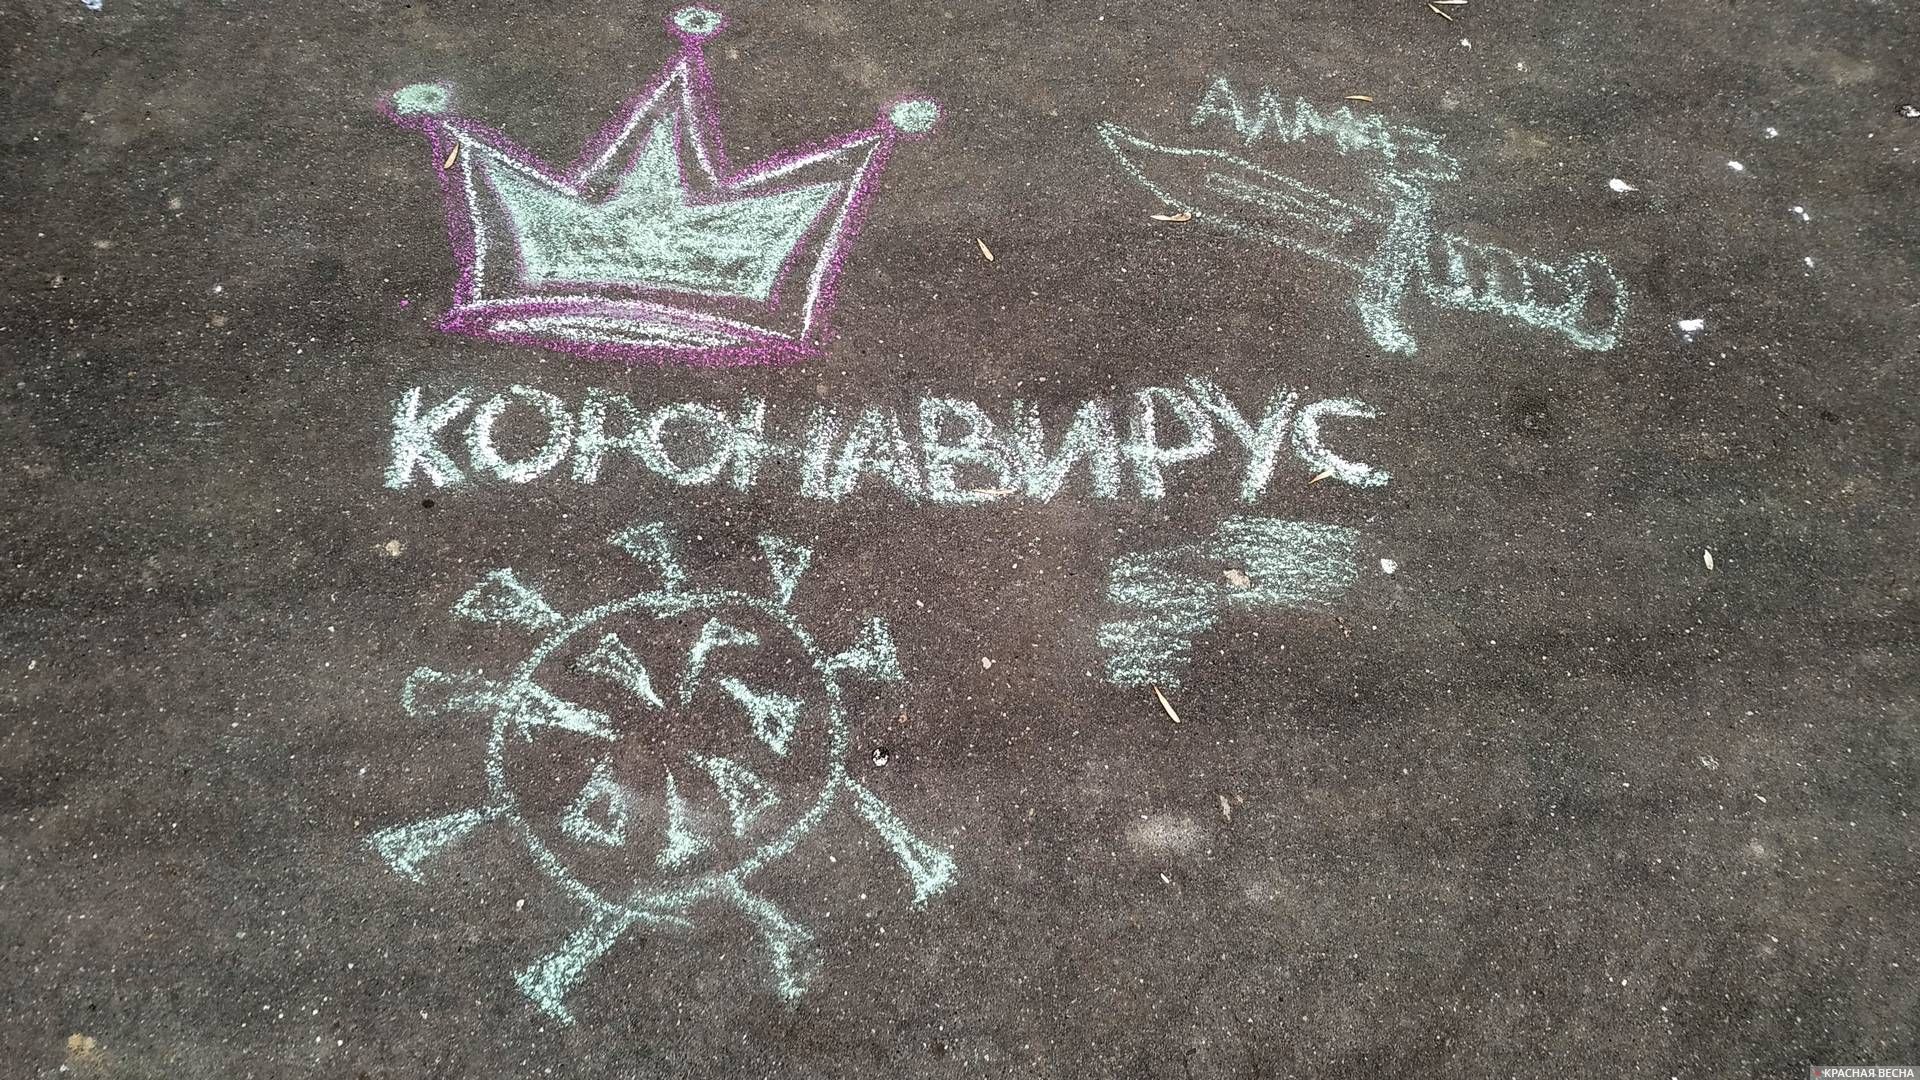 Пос. Знамя Октября, Новая Москва. Коронавирус на асфальте.